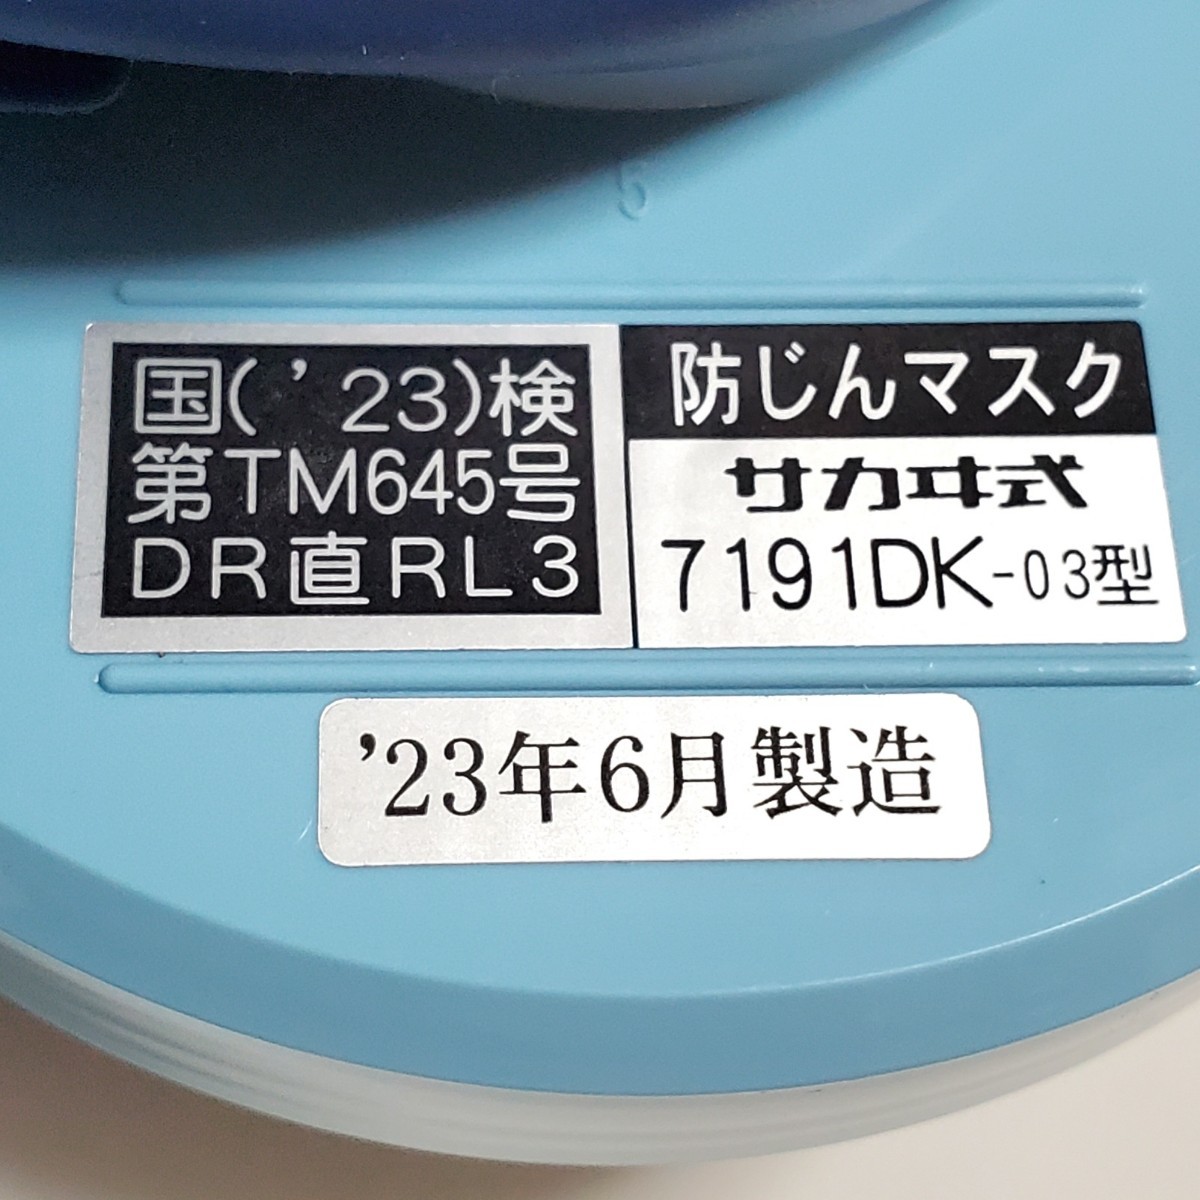 興研 防じんマスク サカヰ式 7191DK-XRB-03型 2個セット 2023年6月製造 未使用品①_画像5